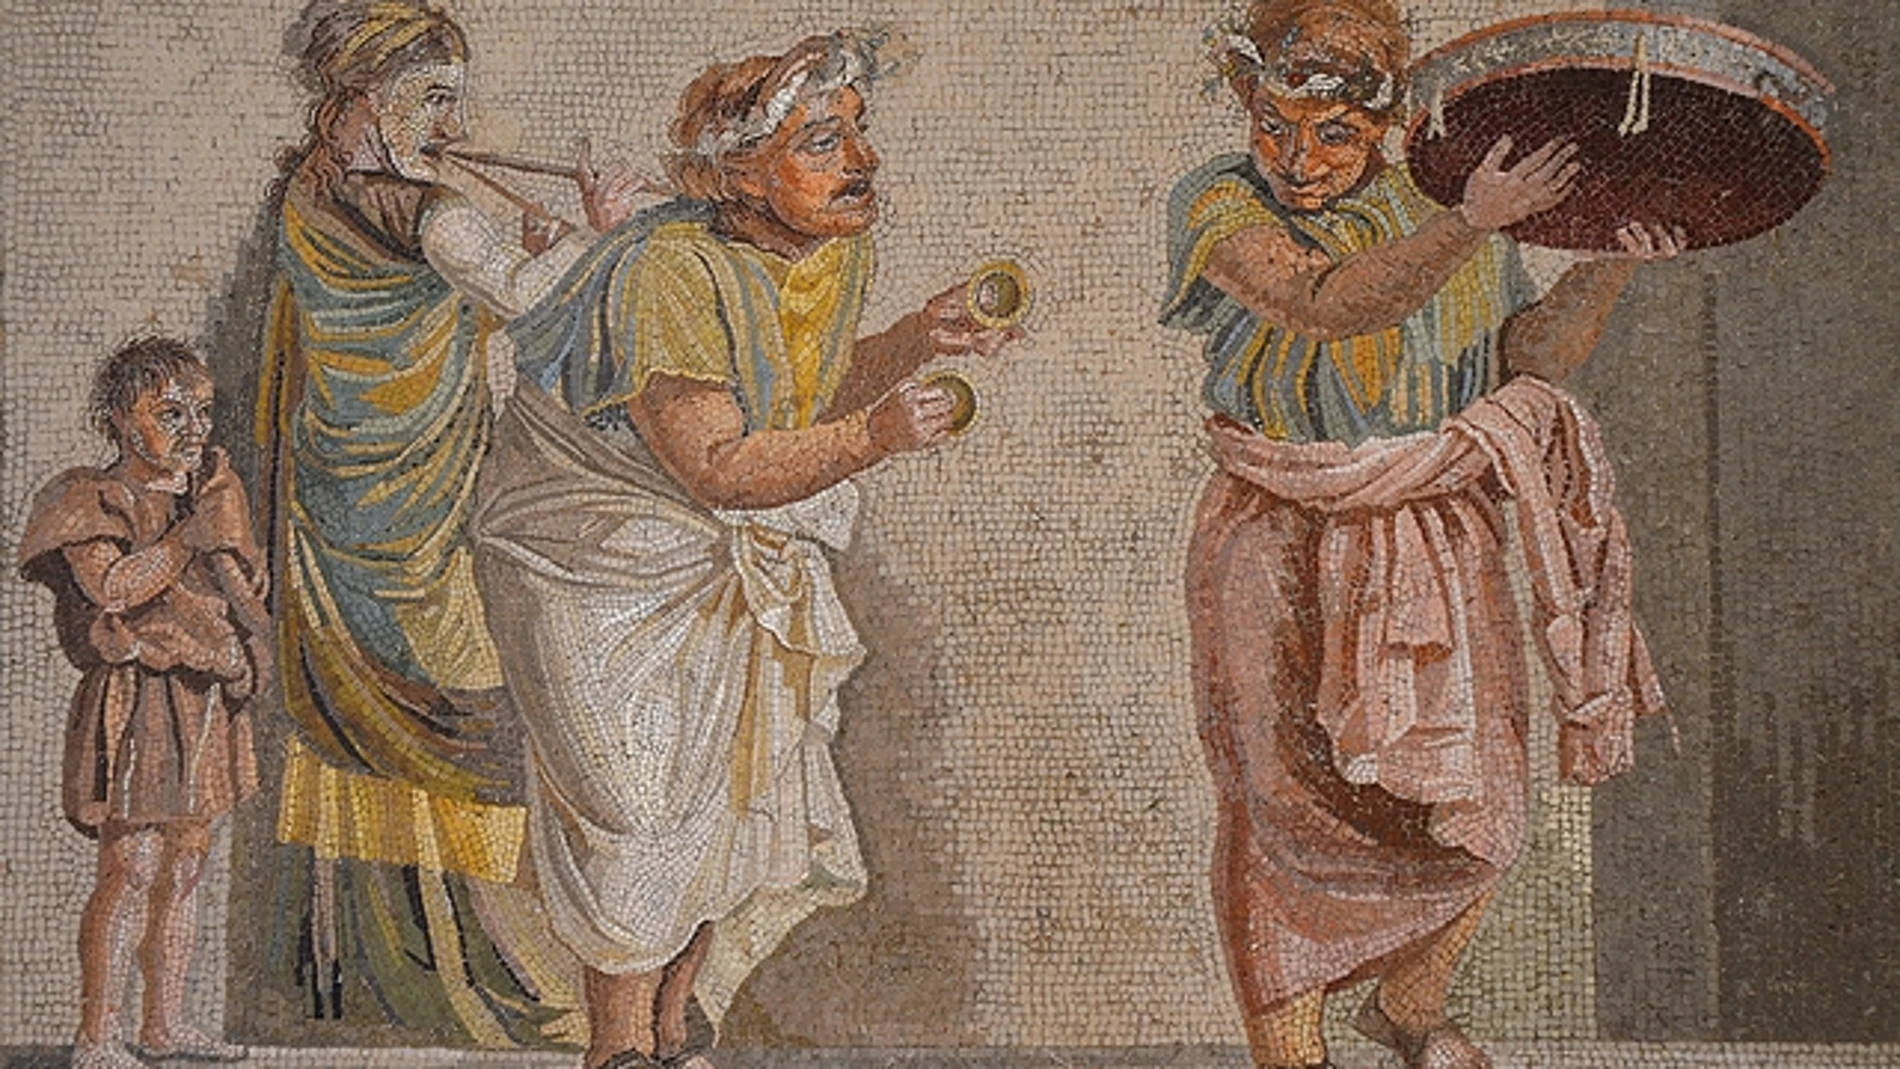 Mosaico con una escena teatral, uno de los grandes foros para el humor en la cultura griega y romana